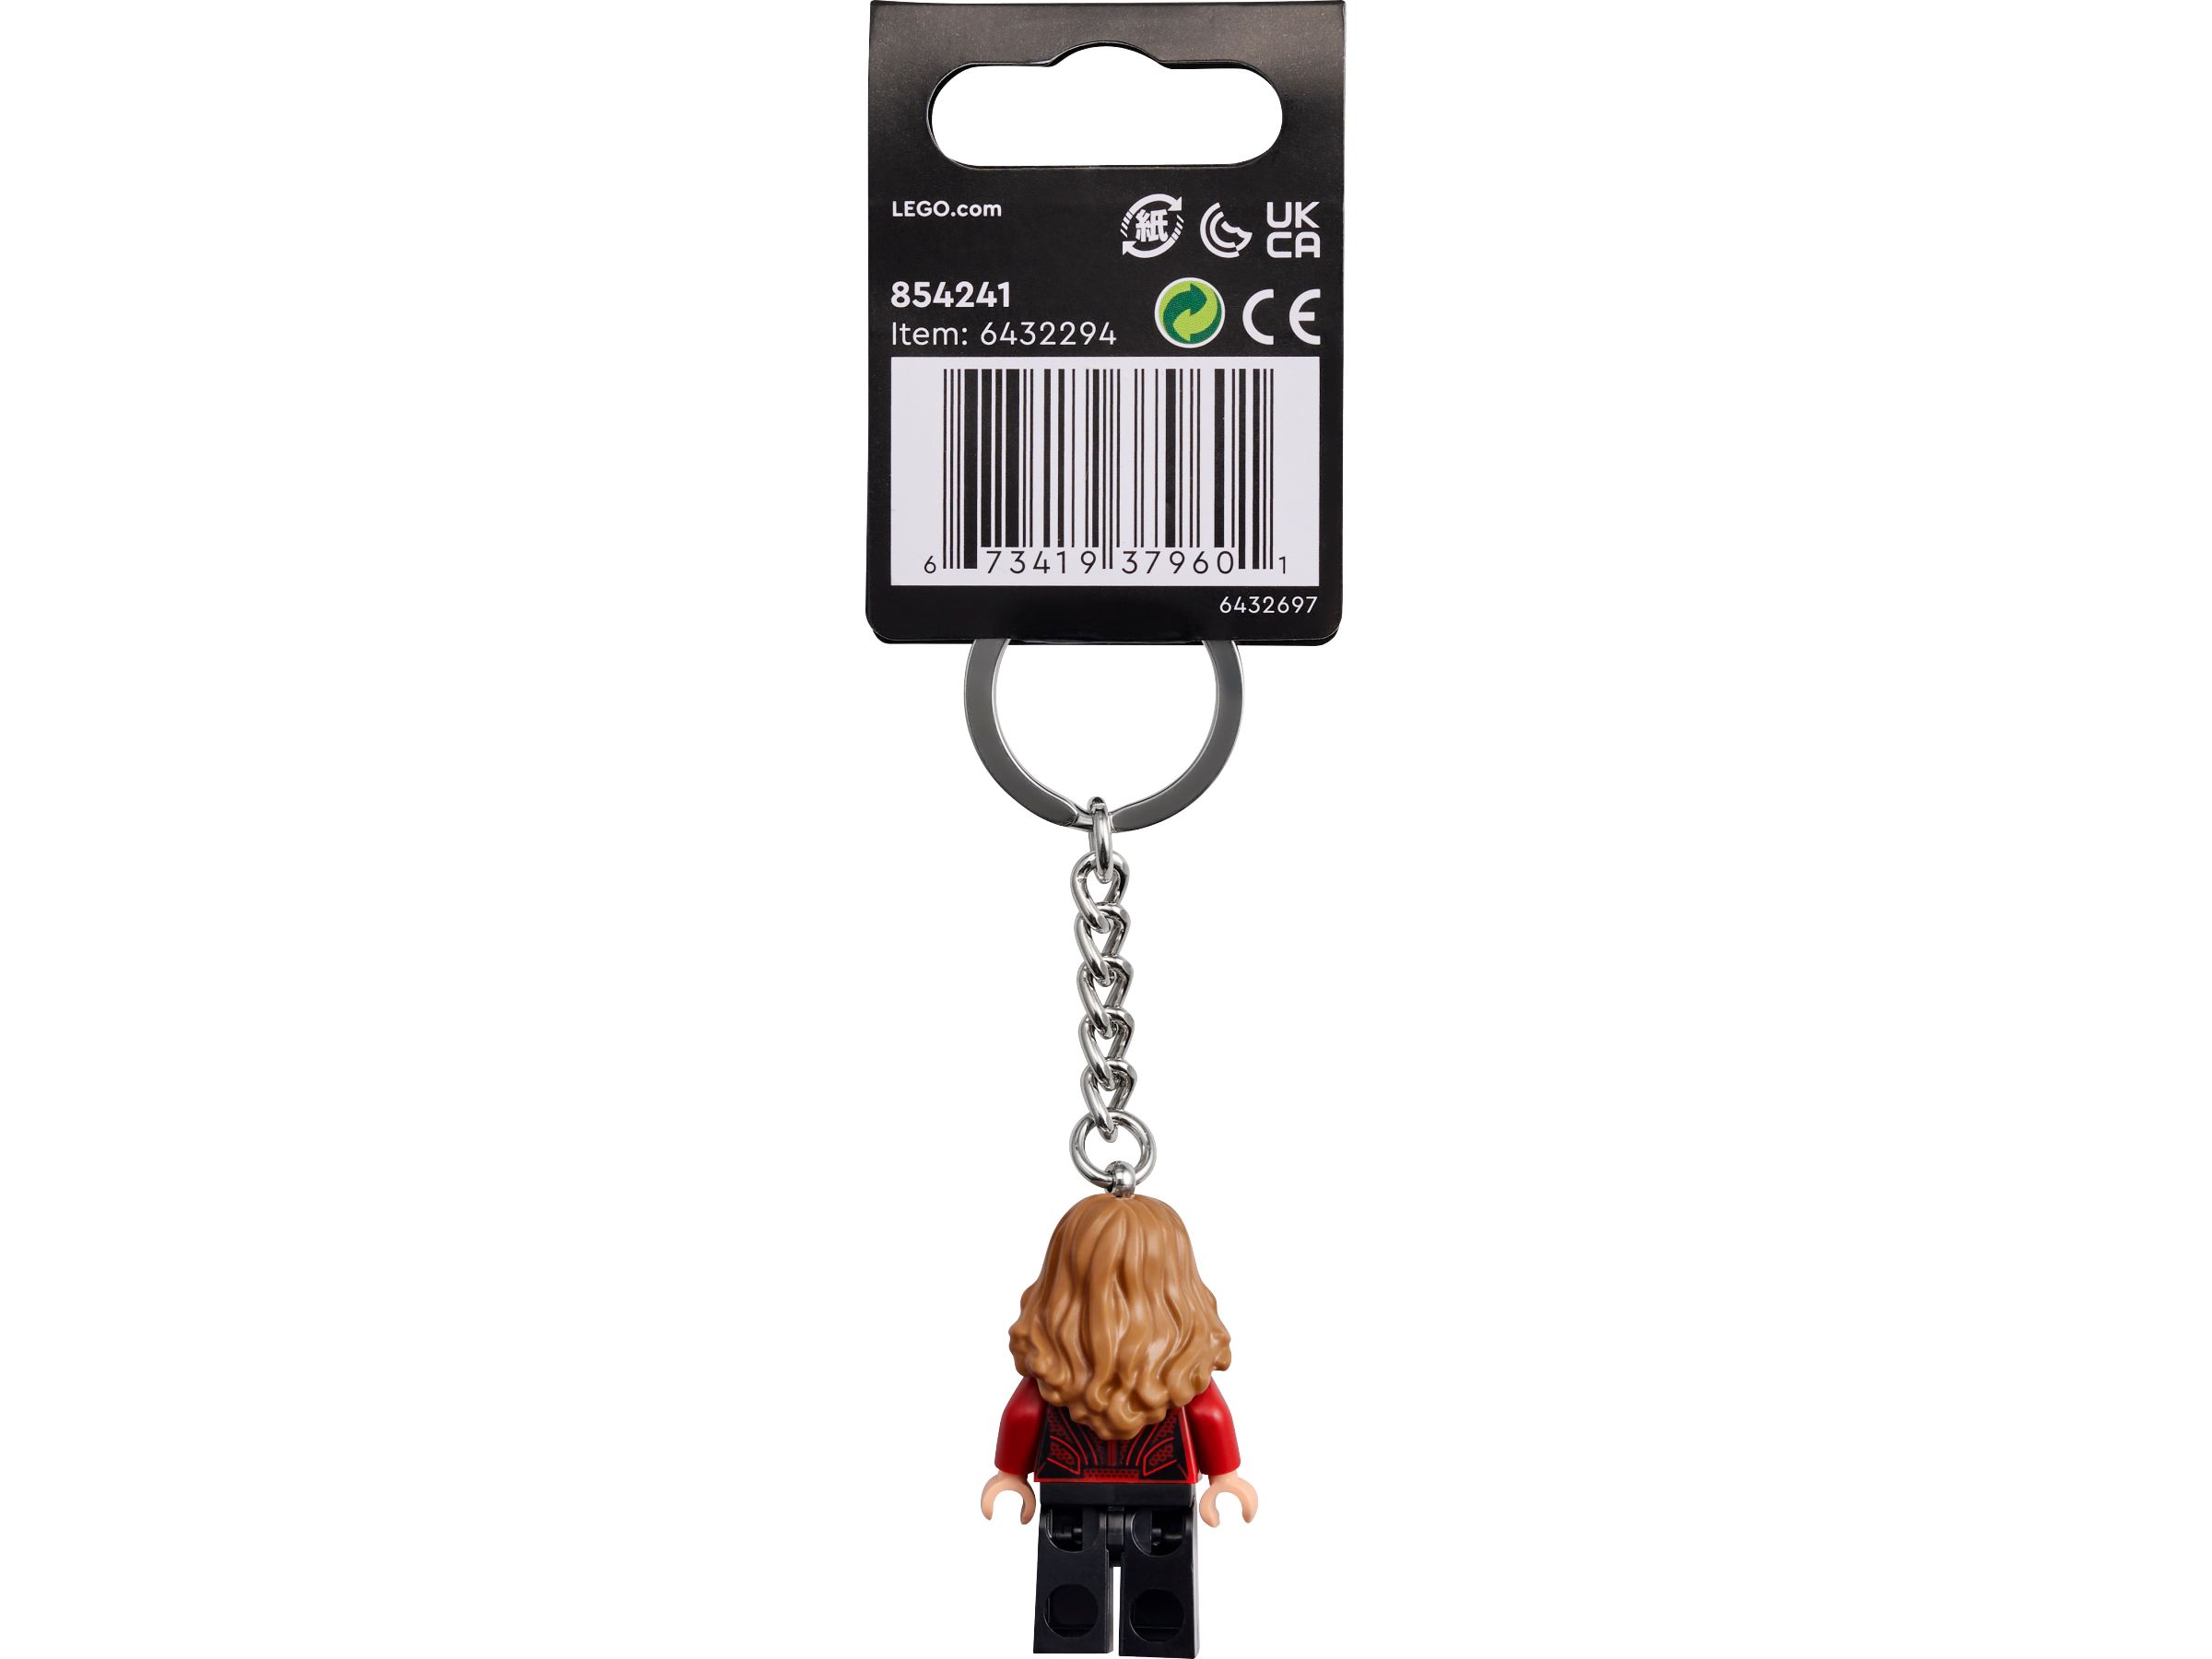 LEGO Gear 854241 Scarlet Witch Schlüsselanhänger LEGO_854241_alt2.jpg